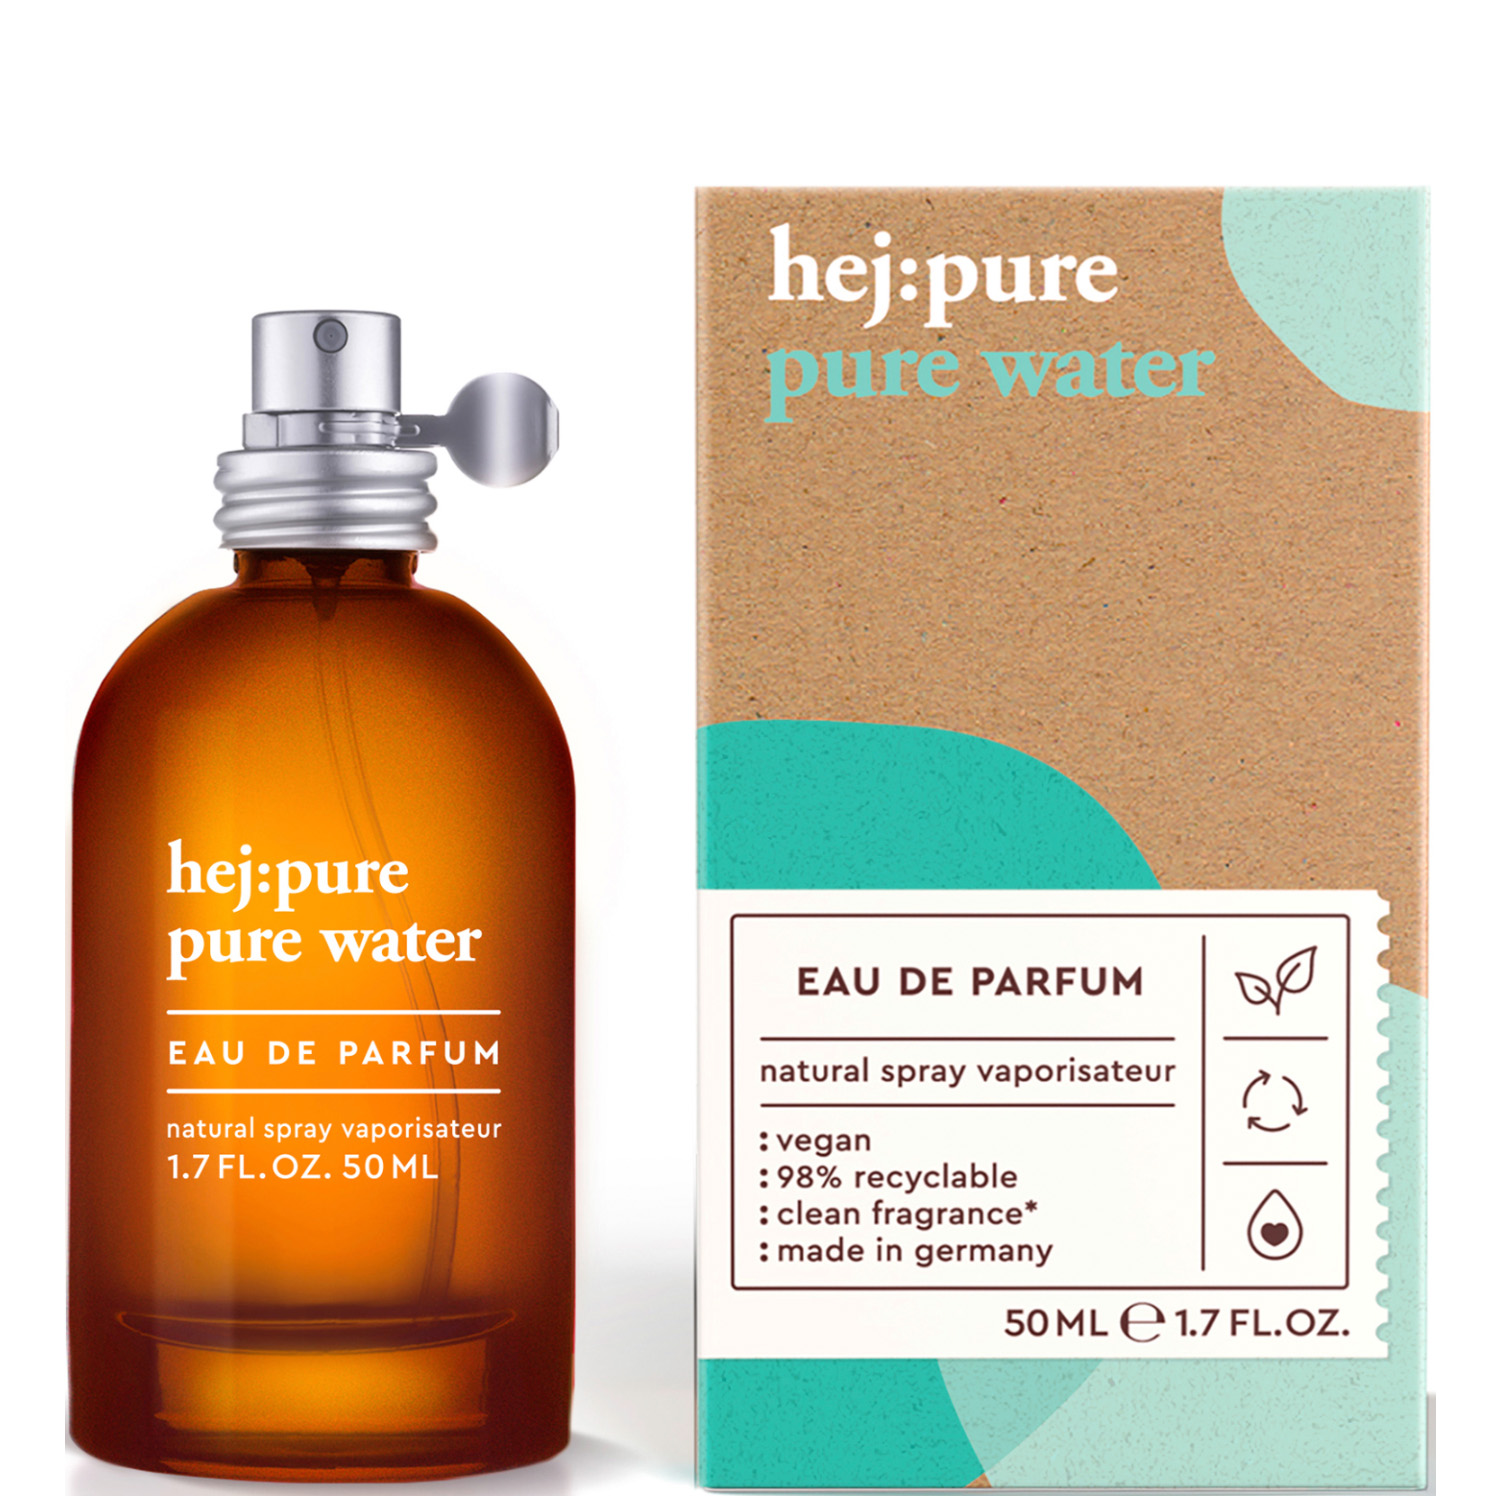 hej:pure Pure Water Eau de Parfum 50ml